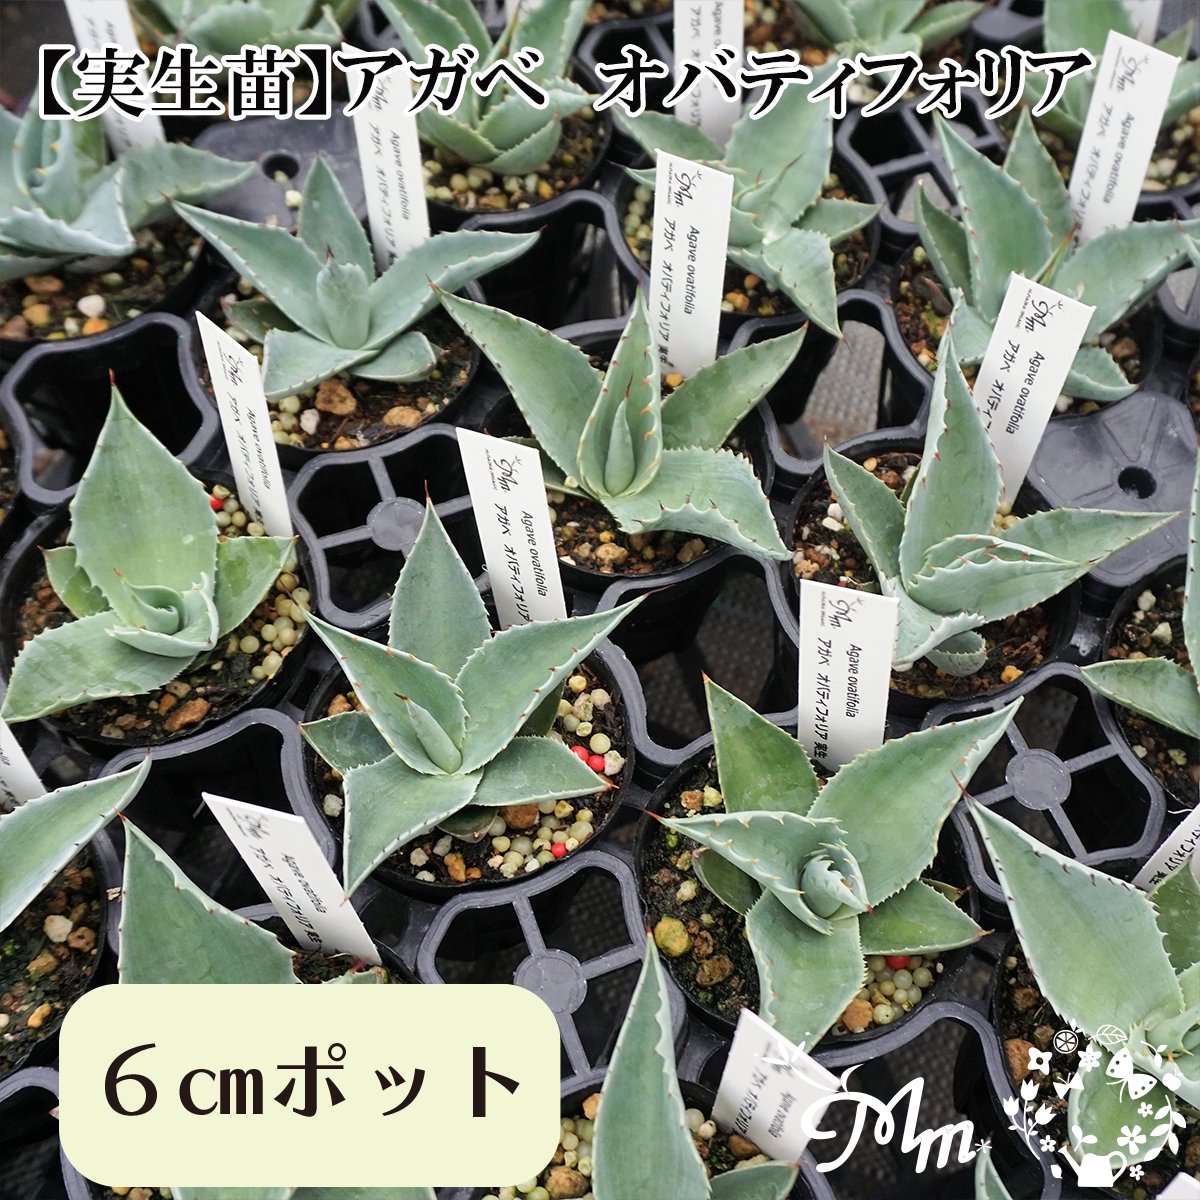 【実生苗(実生株)】Agave obatifolia(アガベ オバティフォリア)6㎝ポット苗